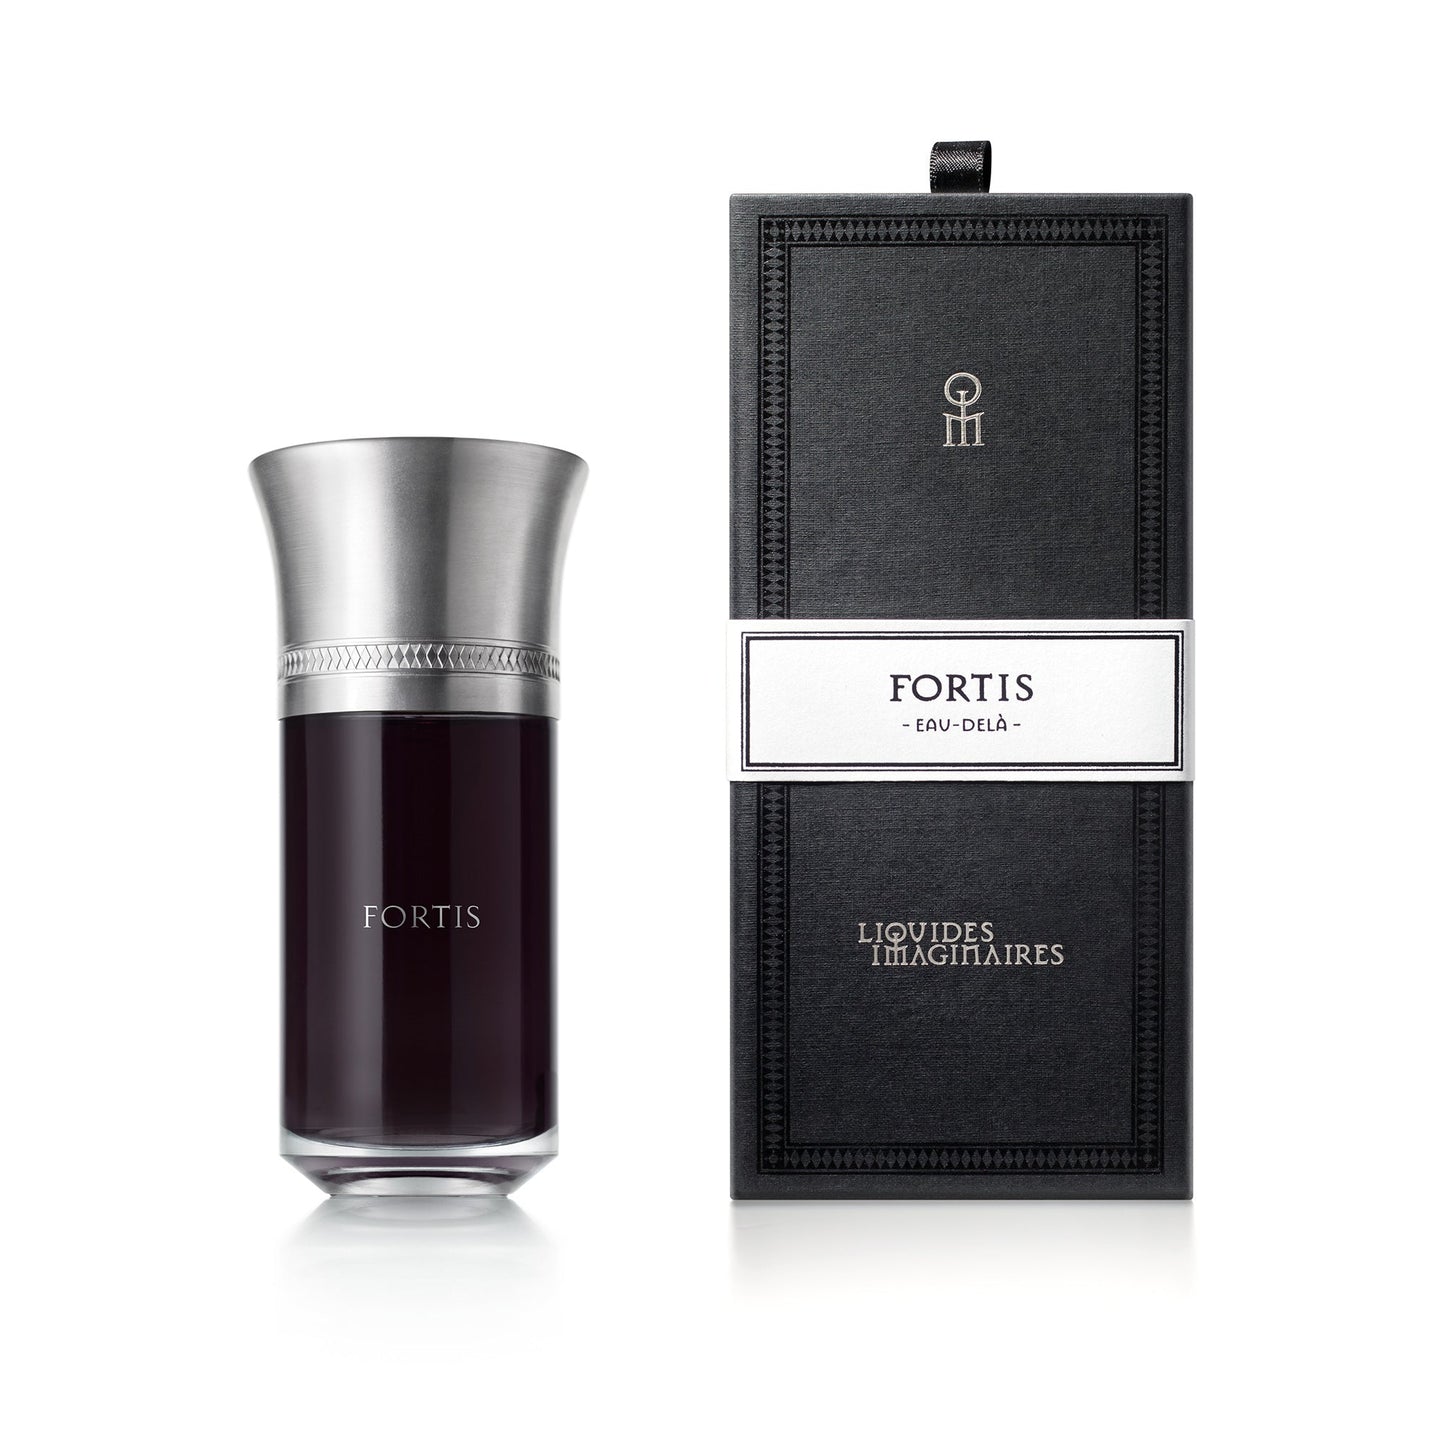 Fortis 2ml Sample Vial - Eau de Parfum